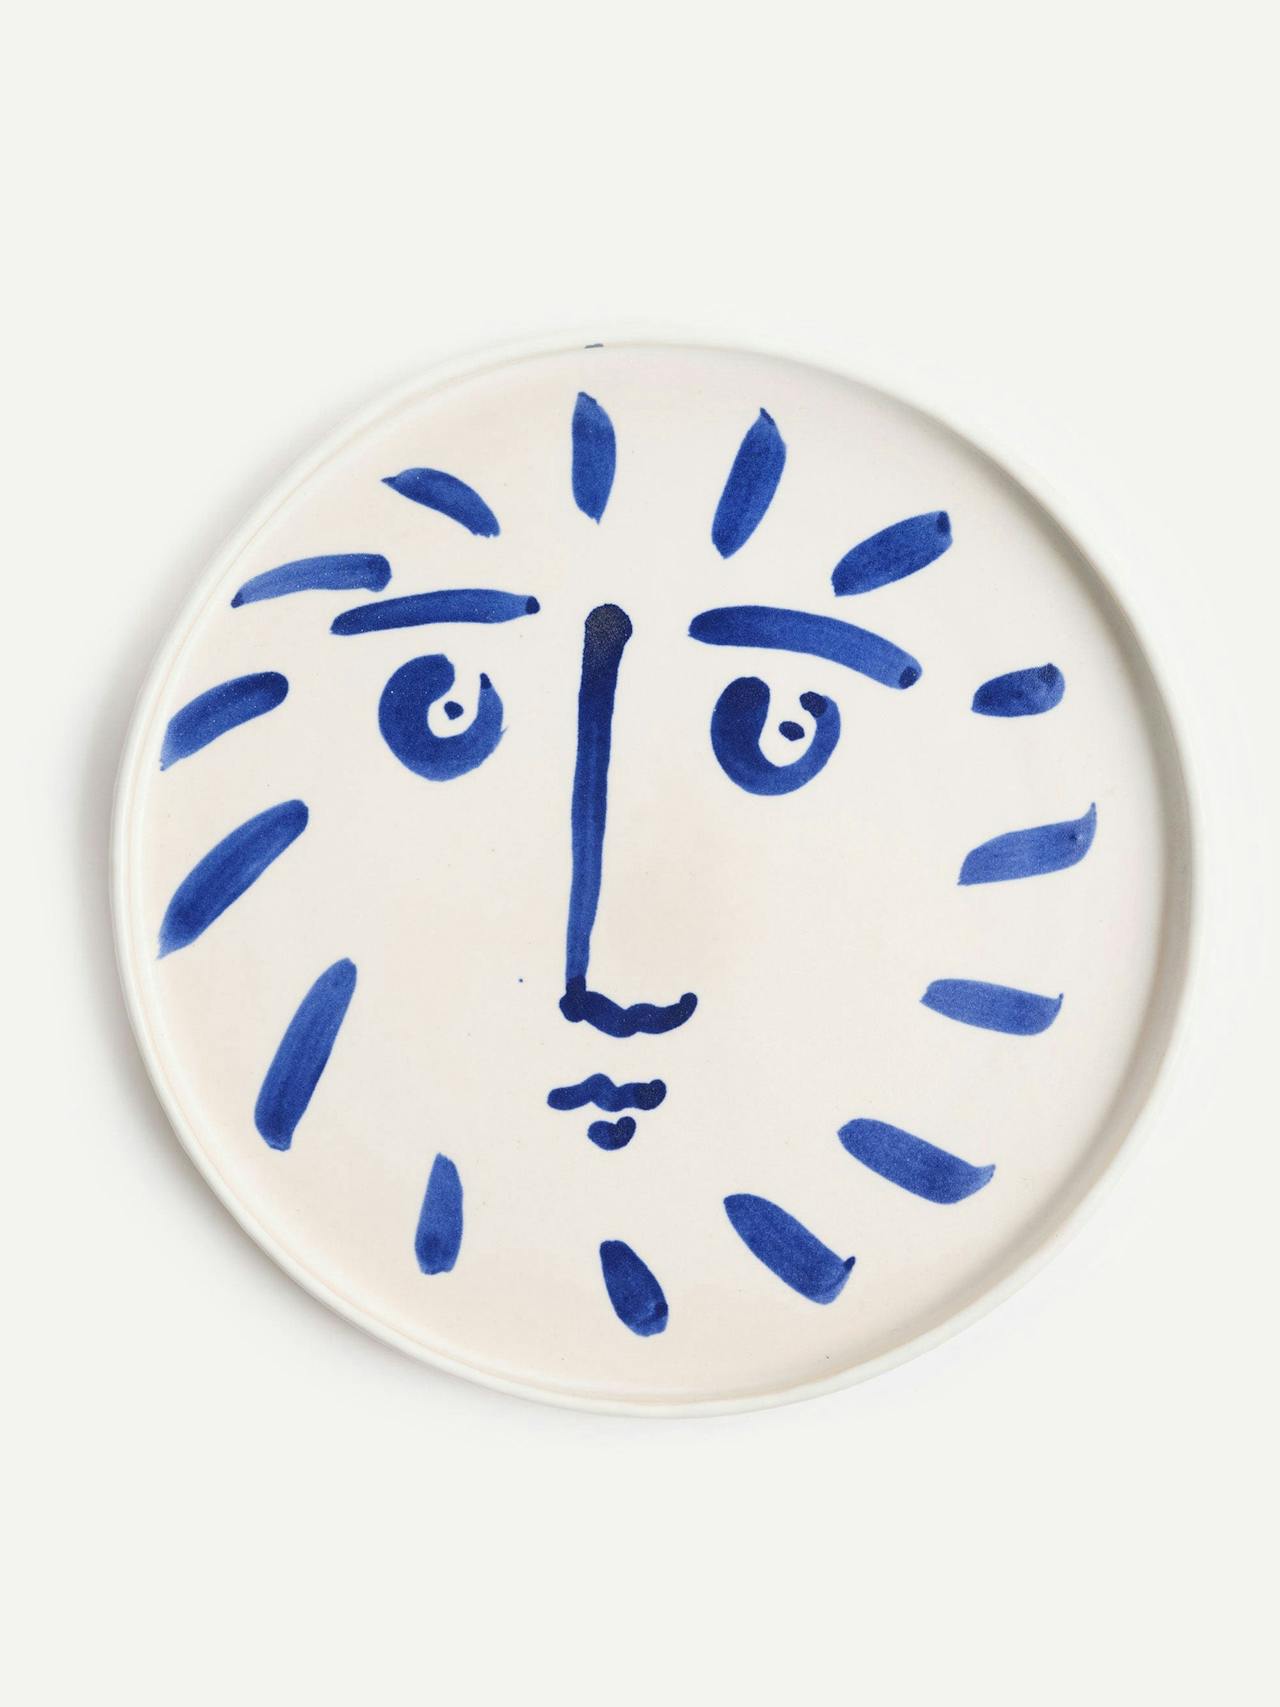 Blue sun face serving platter